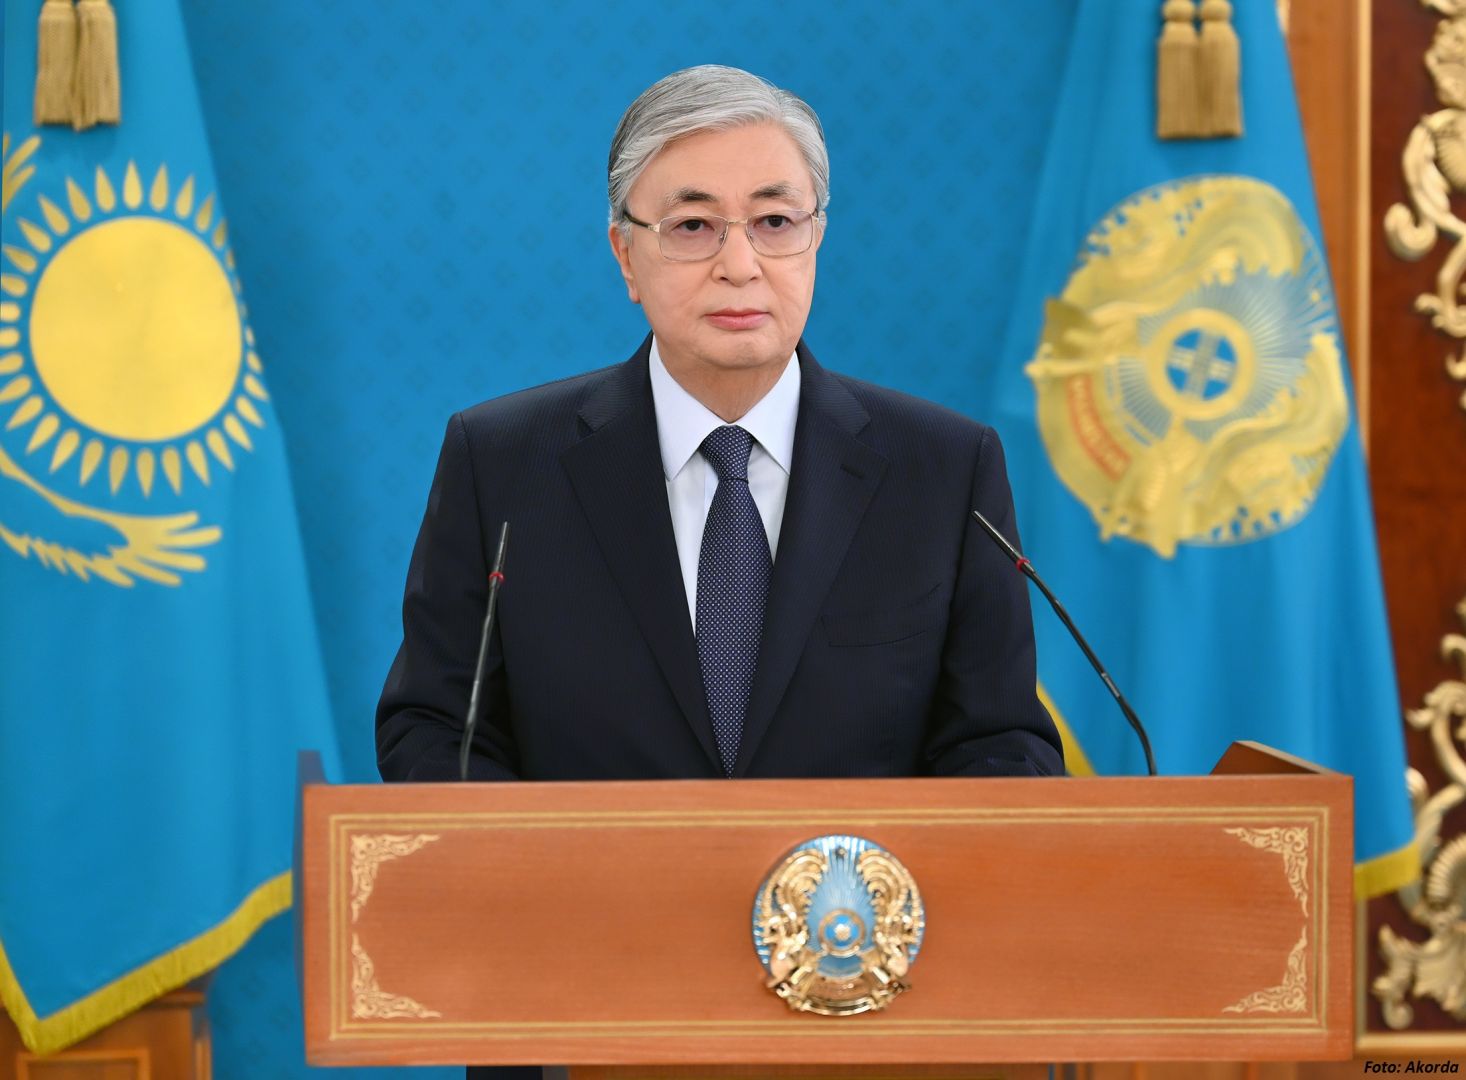 Wir brauchen eine starke Politik, um die Wirtschaft Kasachstans zu entmonopolisieren –Tokajew